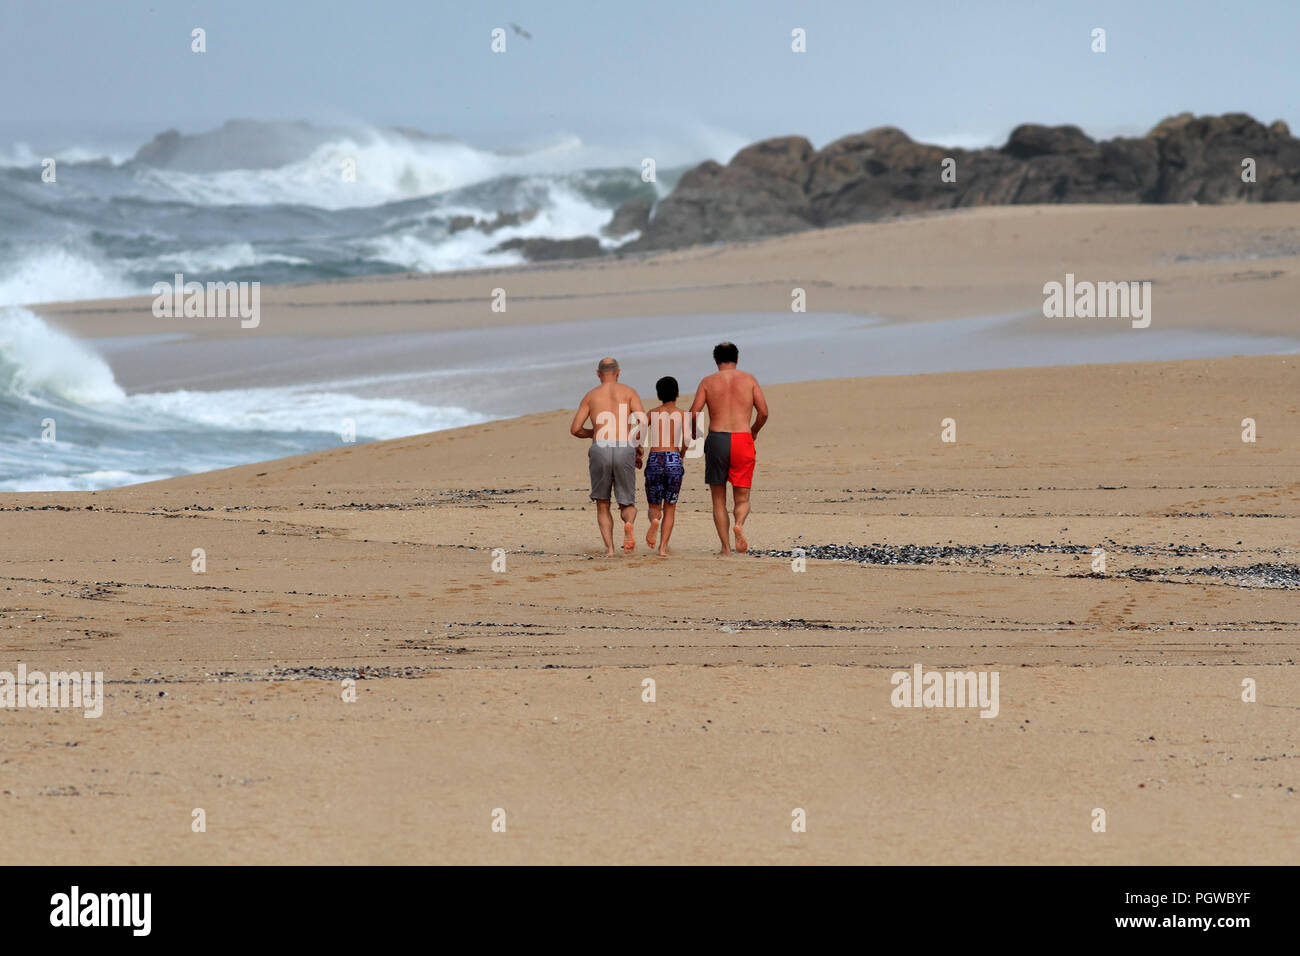 Matosinhos, Portugal - Oktober 19, 2014: Drei männliche Personen, zwei Erwachsene und ein junger Mann, der auf einem einsamen Strand im Norden Portugals Stockfoto